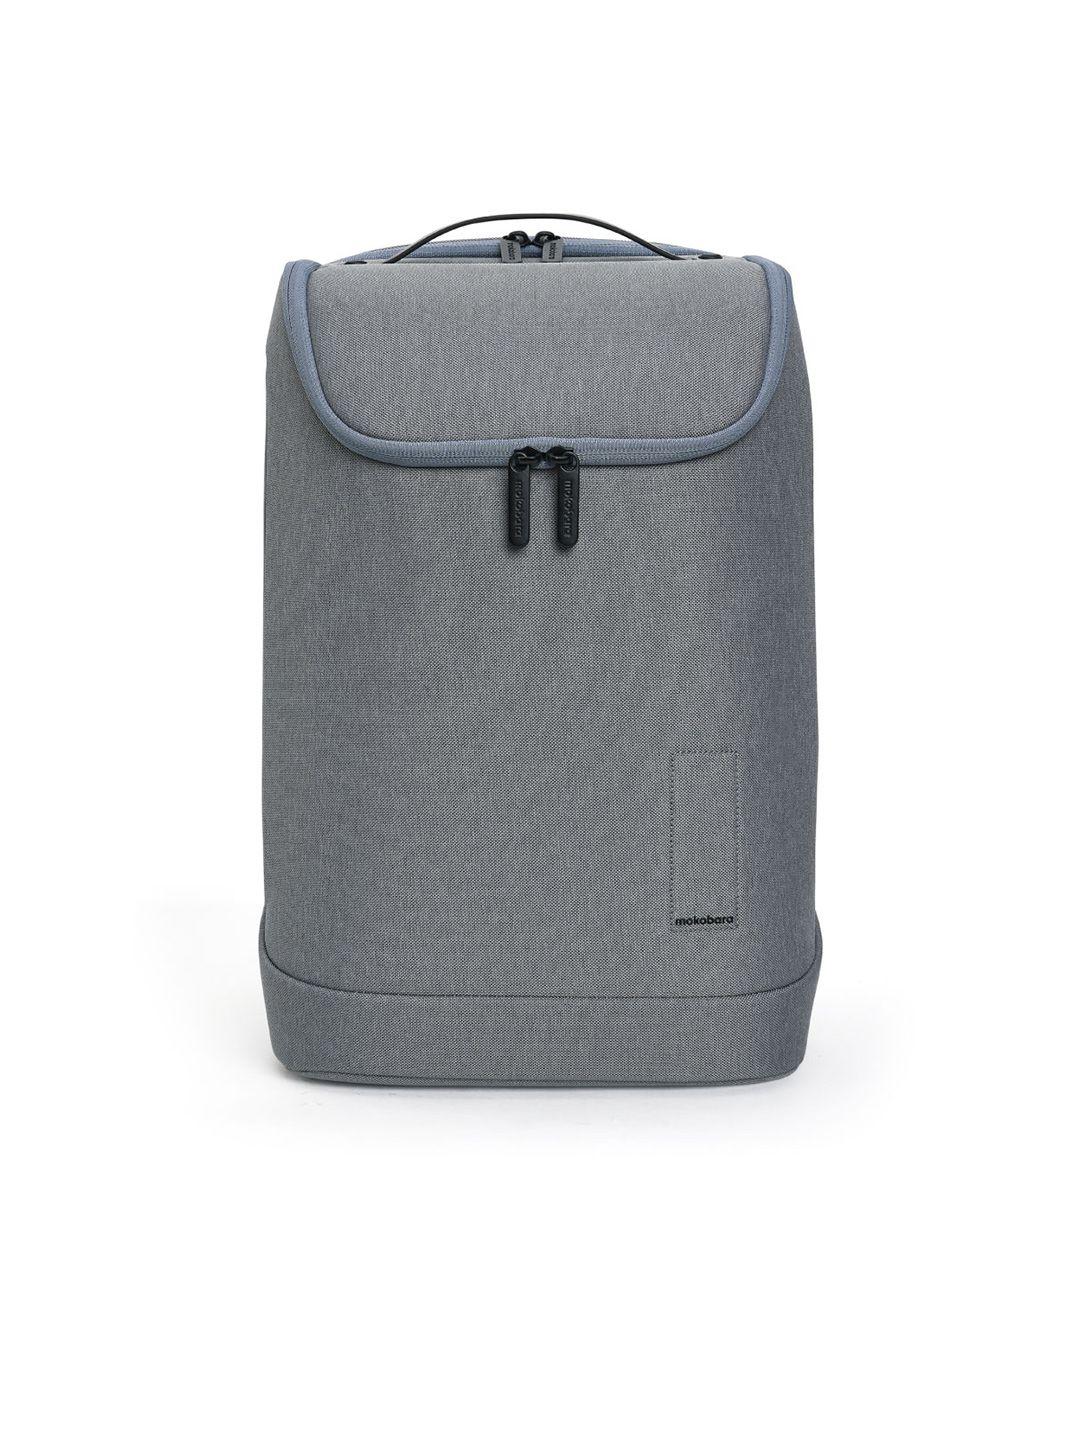 mokobara unisex water resistant backpack